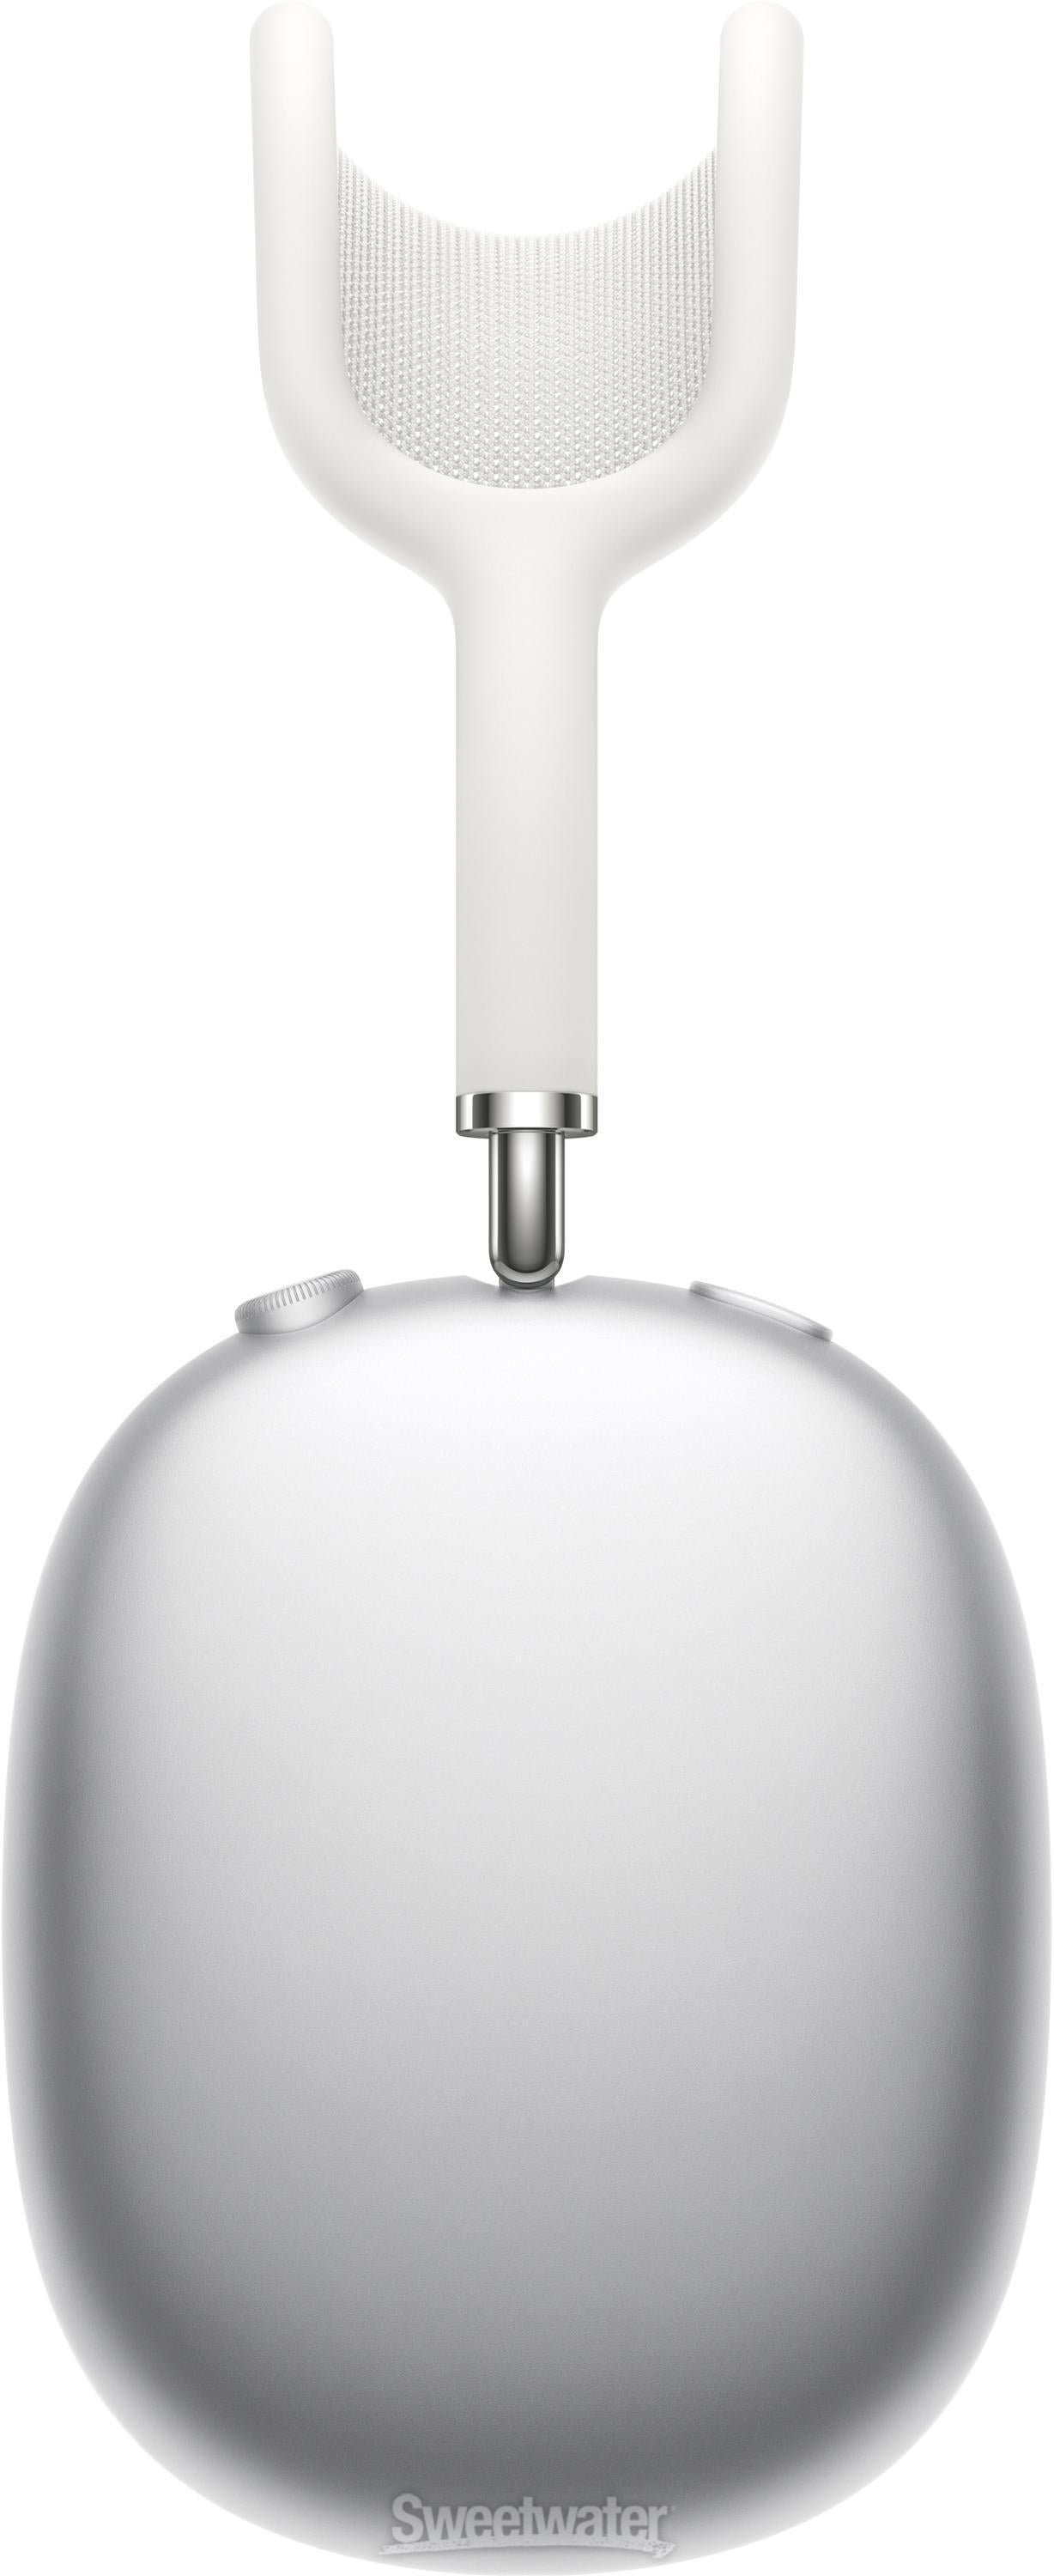 クリアランスショップ Apple AirPods Max シルバー - オーディオ機器